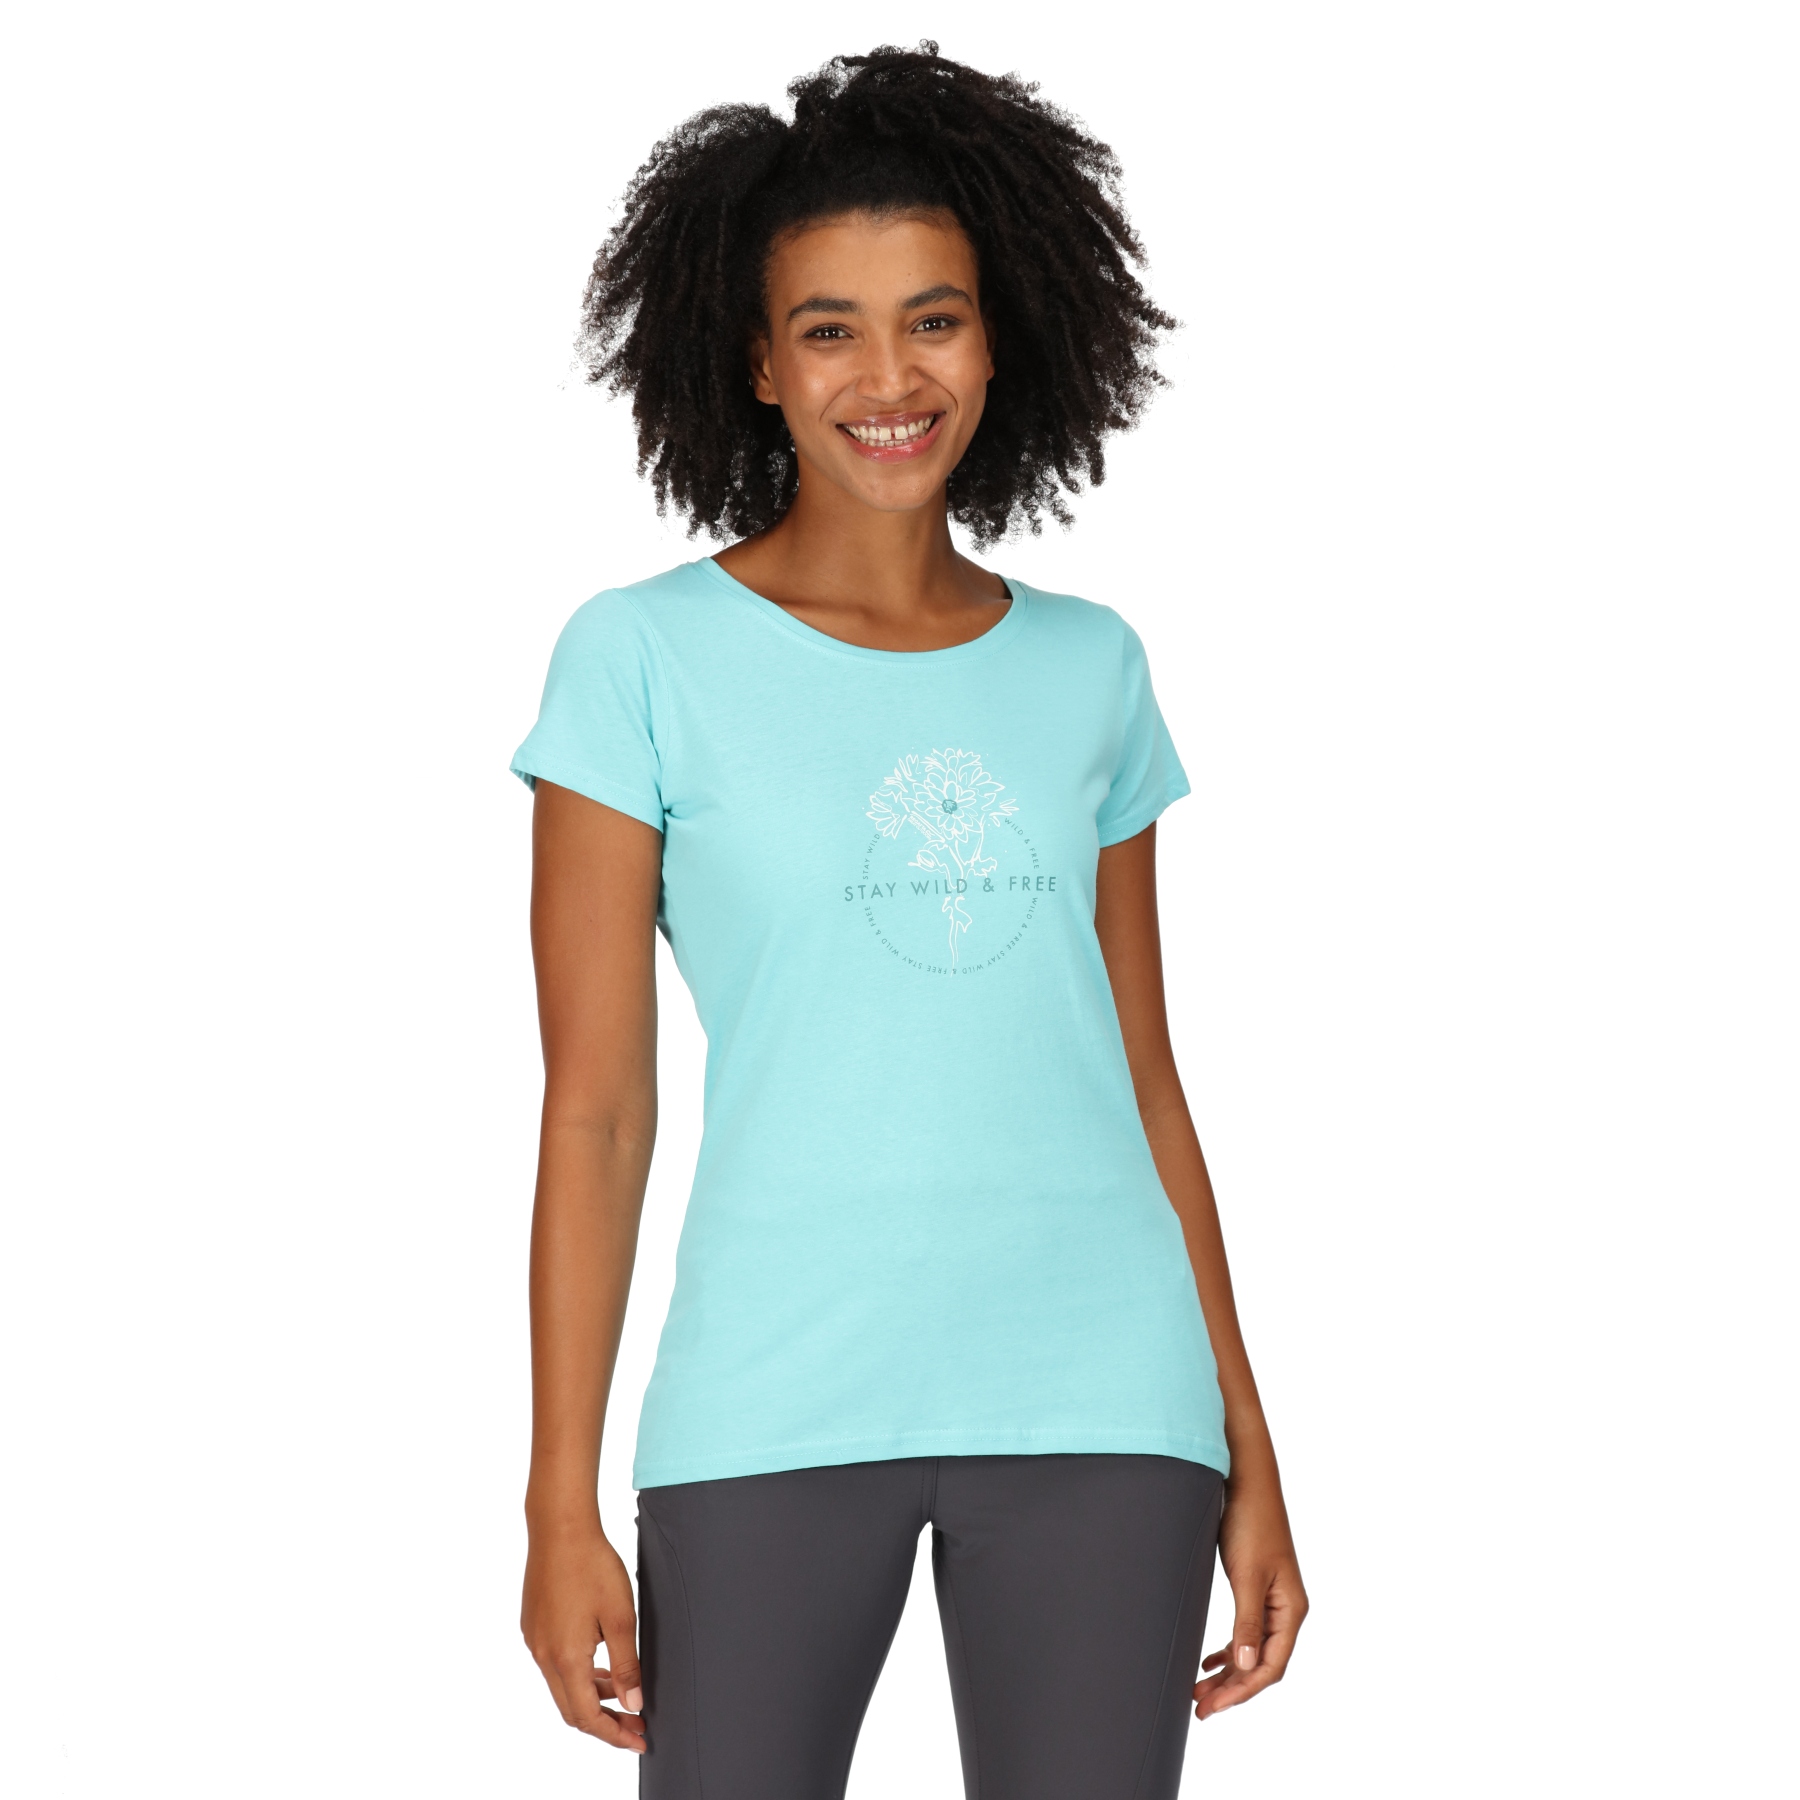 Produktbild von Regatta Breezed III T-Shirt Damen - Amazonite HWL